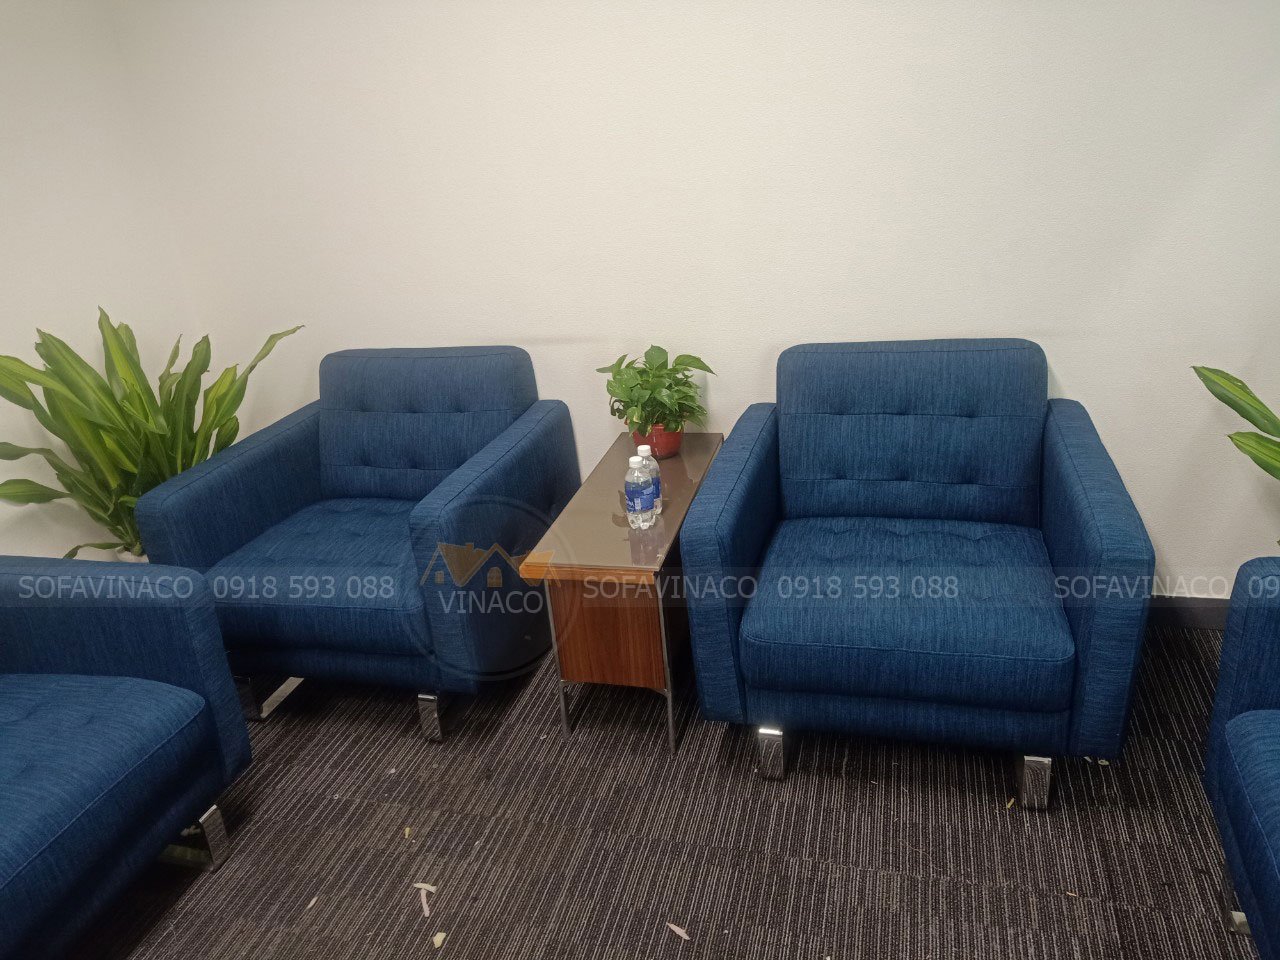 Bọc ghế sofa nỉ màu xnh cho khách tại Hoàng Cầu, Hà Nội